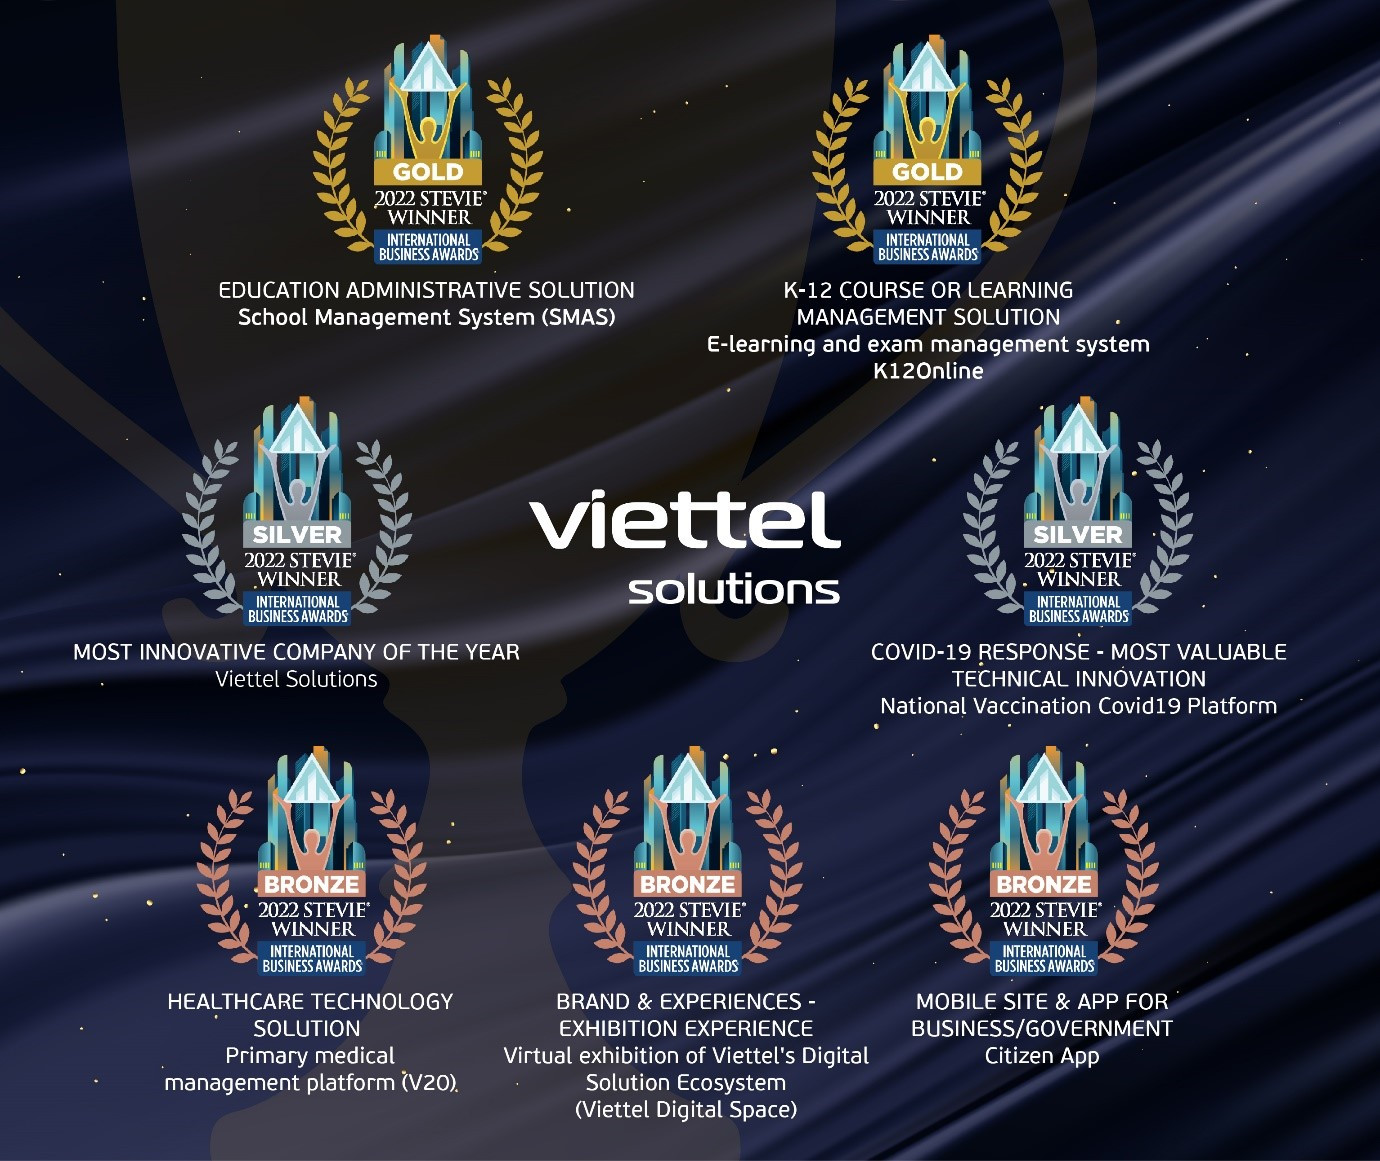 Viettel Solutions “thắng lớn” tại đấu trường quốc tế với một loạt sáng kiến công nghệ